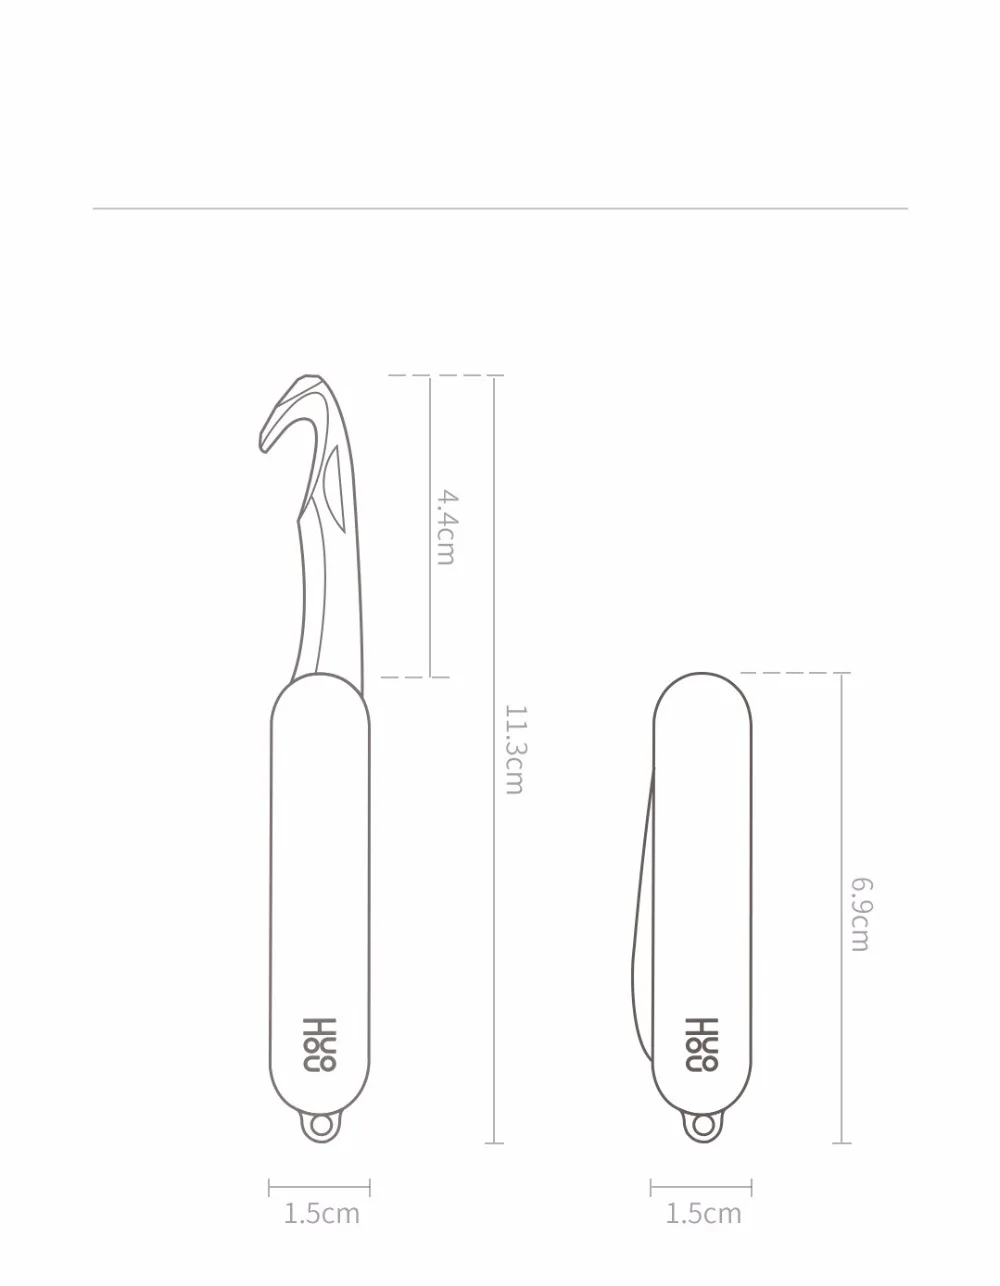 Xiaomi Huohou мини-нож для распаковки складывающийся Фруктовый нож инструмент для резки инструмент для кемпинга открытая посылка для выживания на открытом воздухе зажим для лагеря острый резак D5